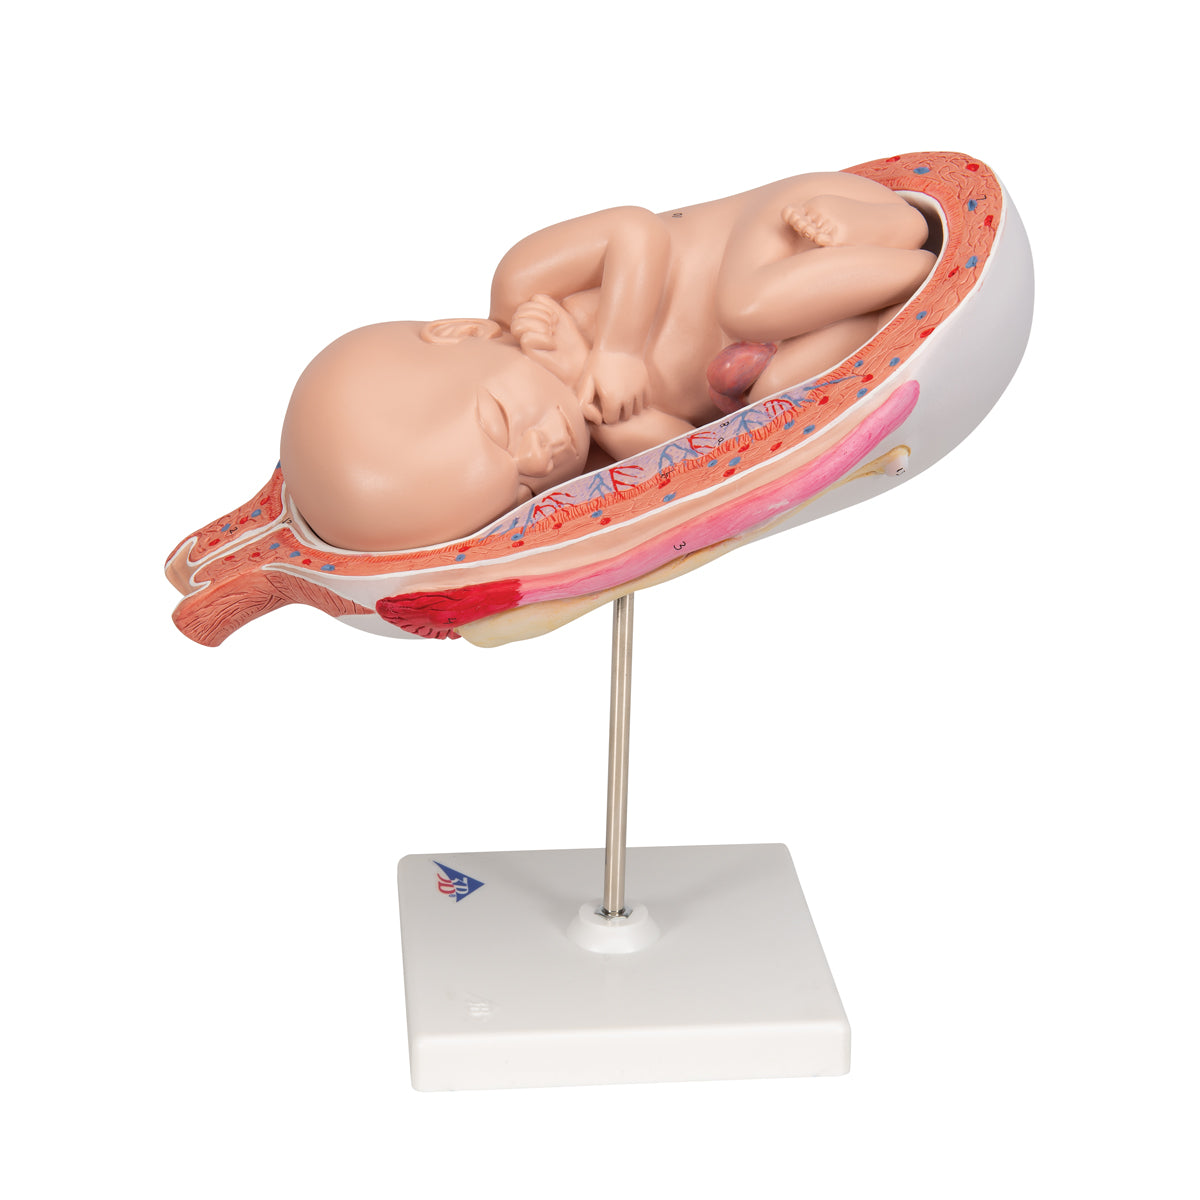 Detaljeret model af et foster i livmoderen svarende til 7. graviditets-måned